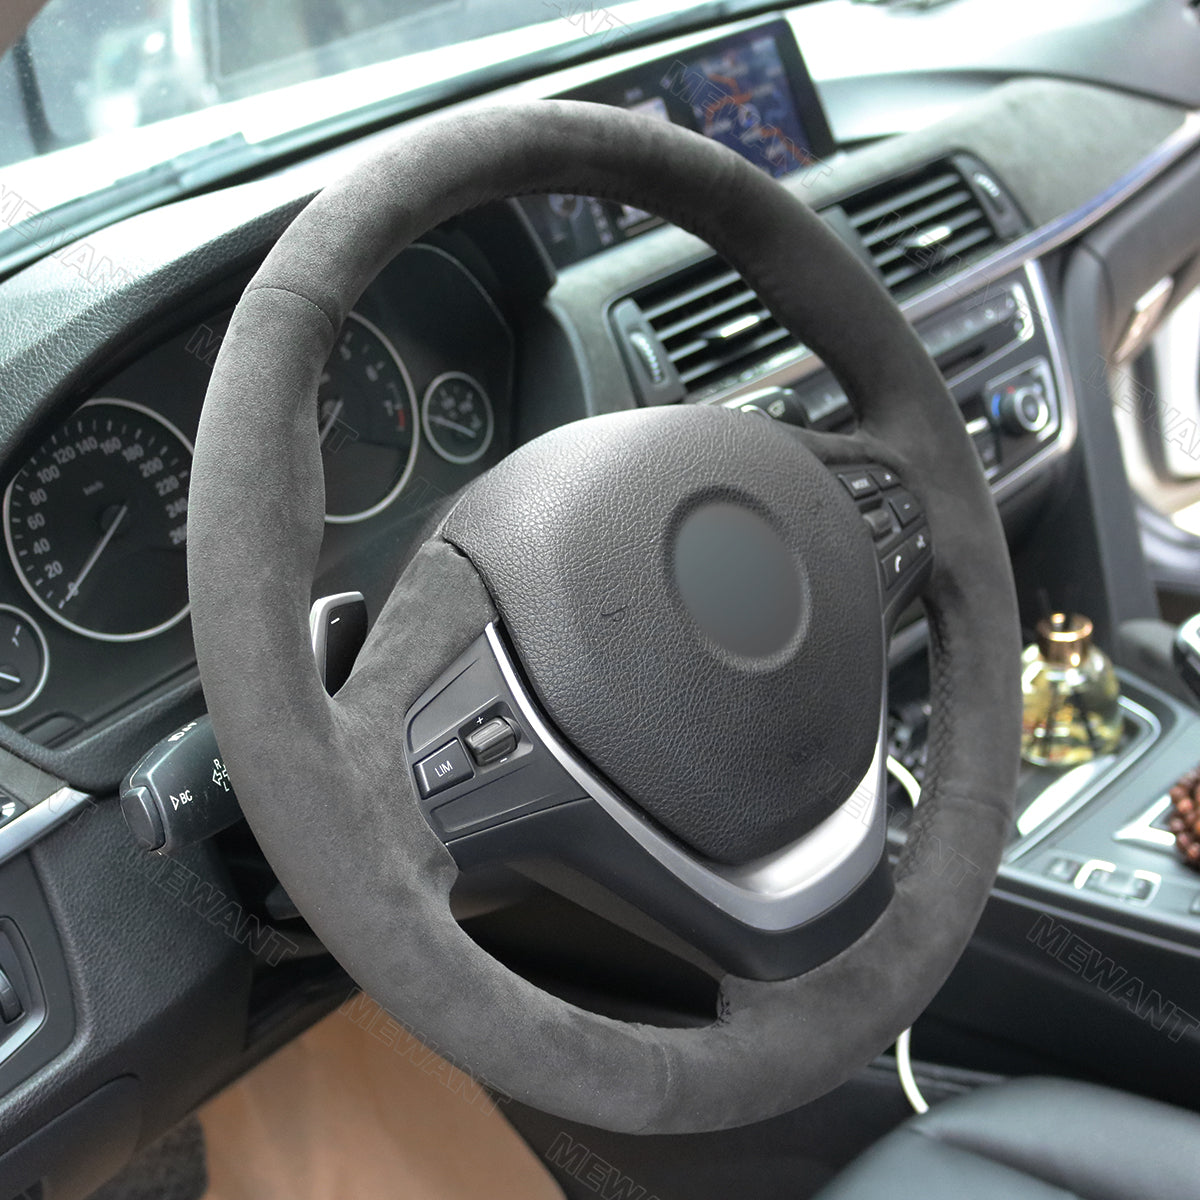 MEWANT Dark Grey Alcantara Car Steering Wheel Cover for BMW 3